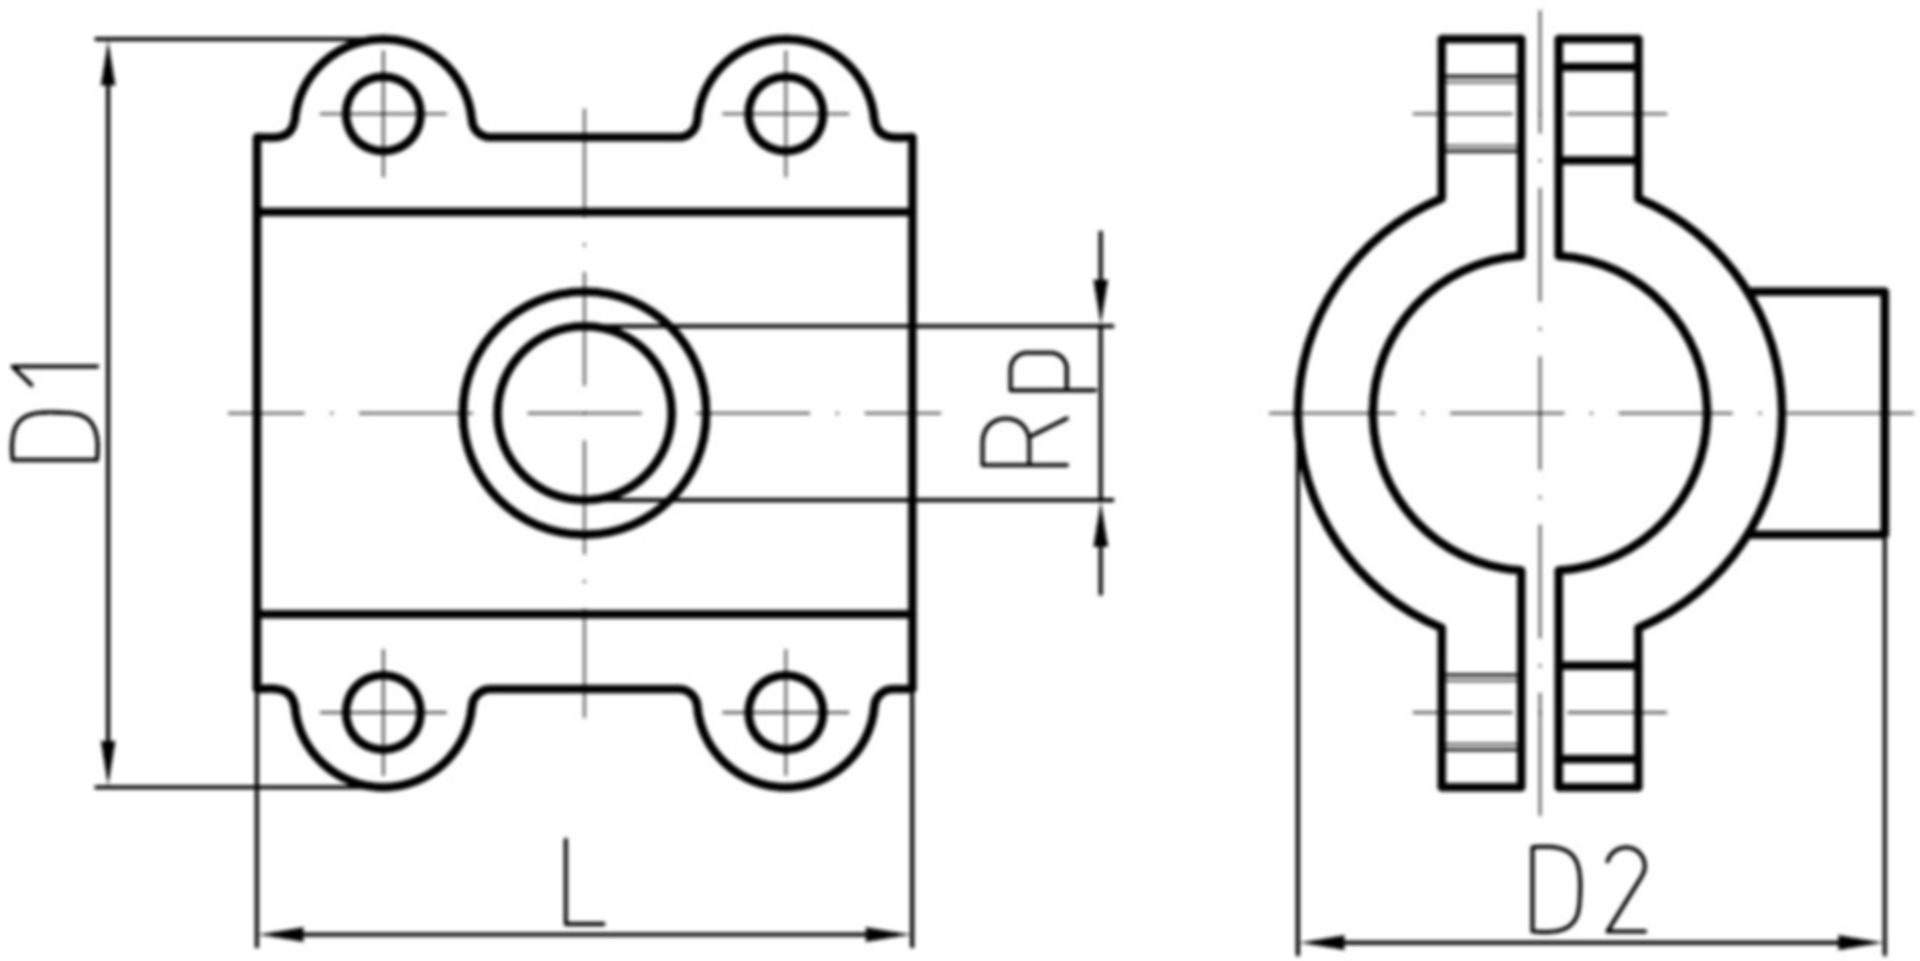 Anbohrschelle EPDM L=100mm 11/2"x3/4" 48.3mm verzinkt, Wasser 16 bar 775 732 068 - GF Primofit